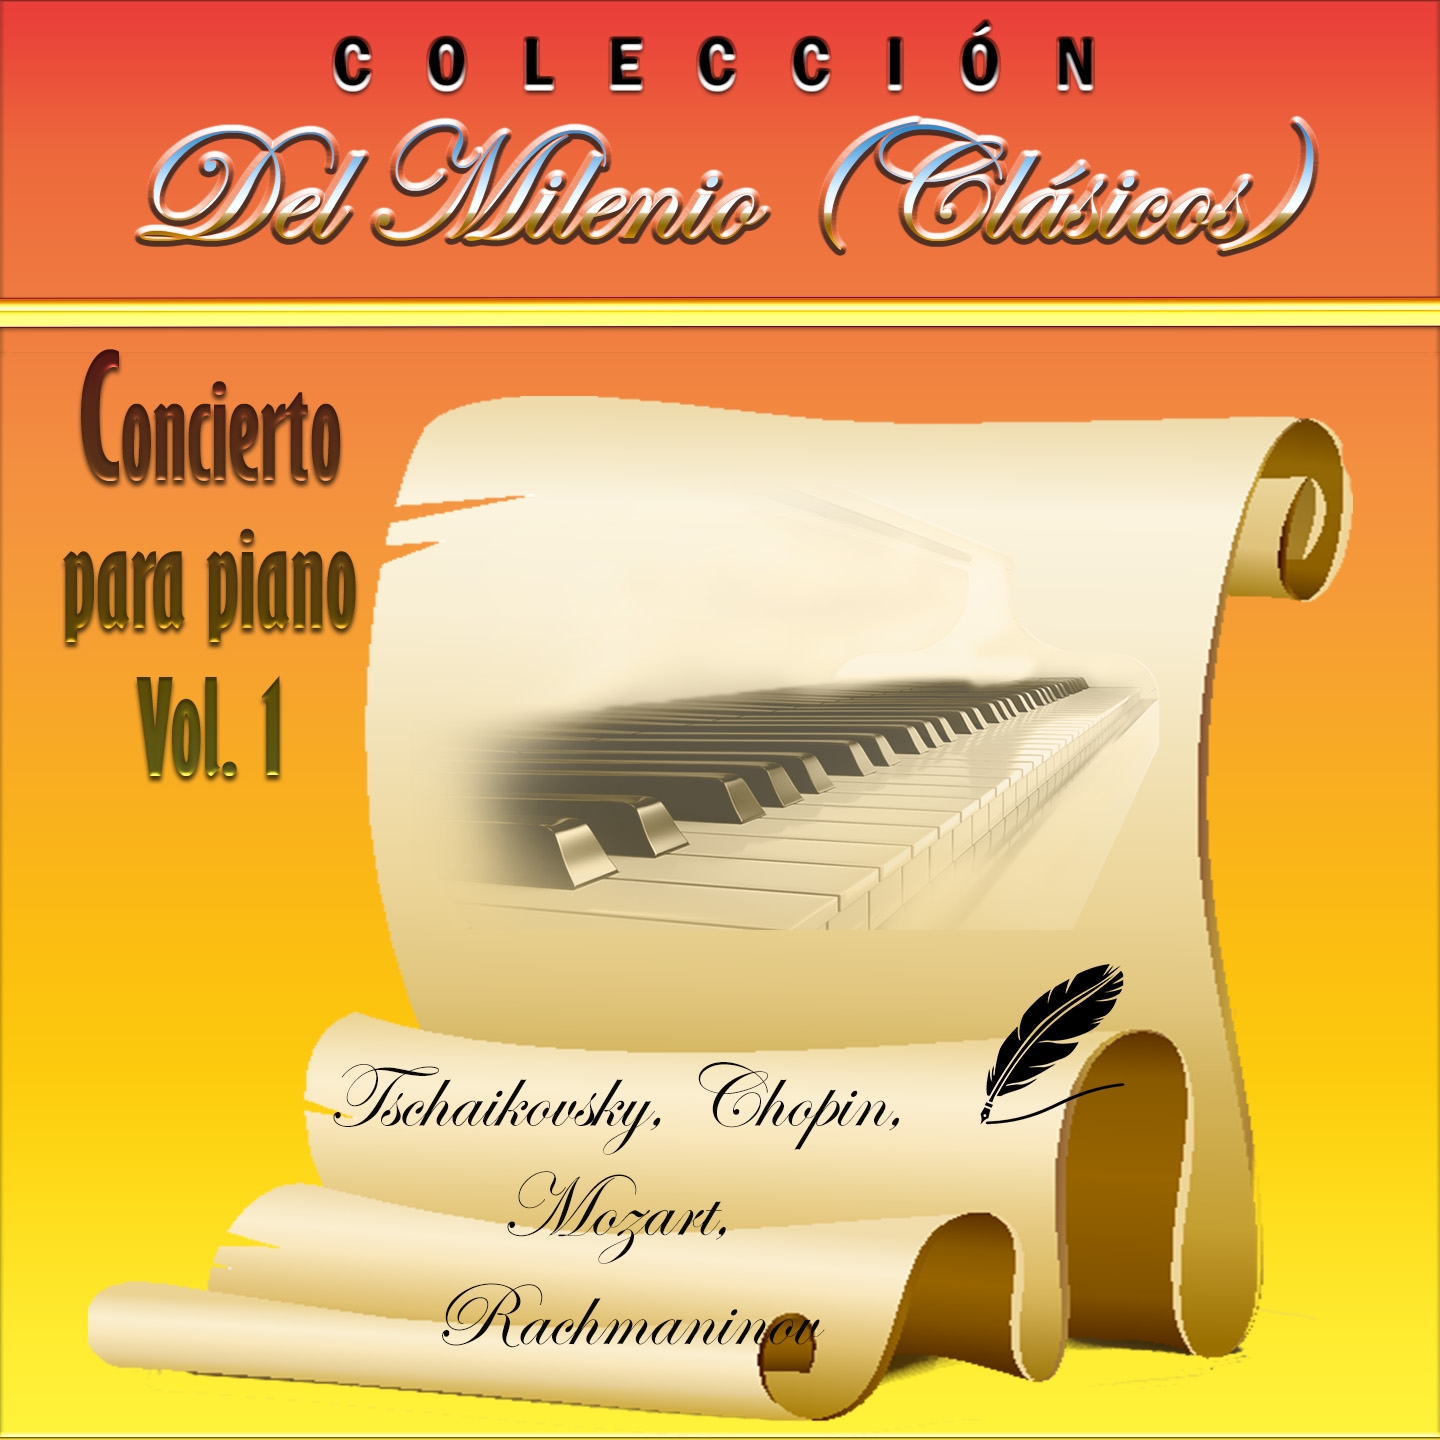 Coleccio n del Milenio: Concierto para Piano, Vol. 1